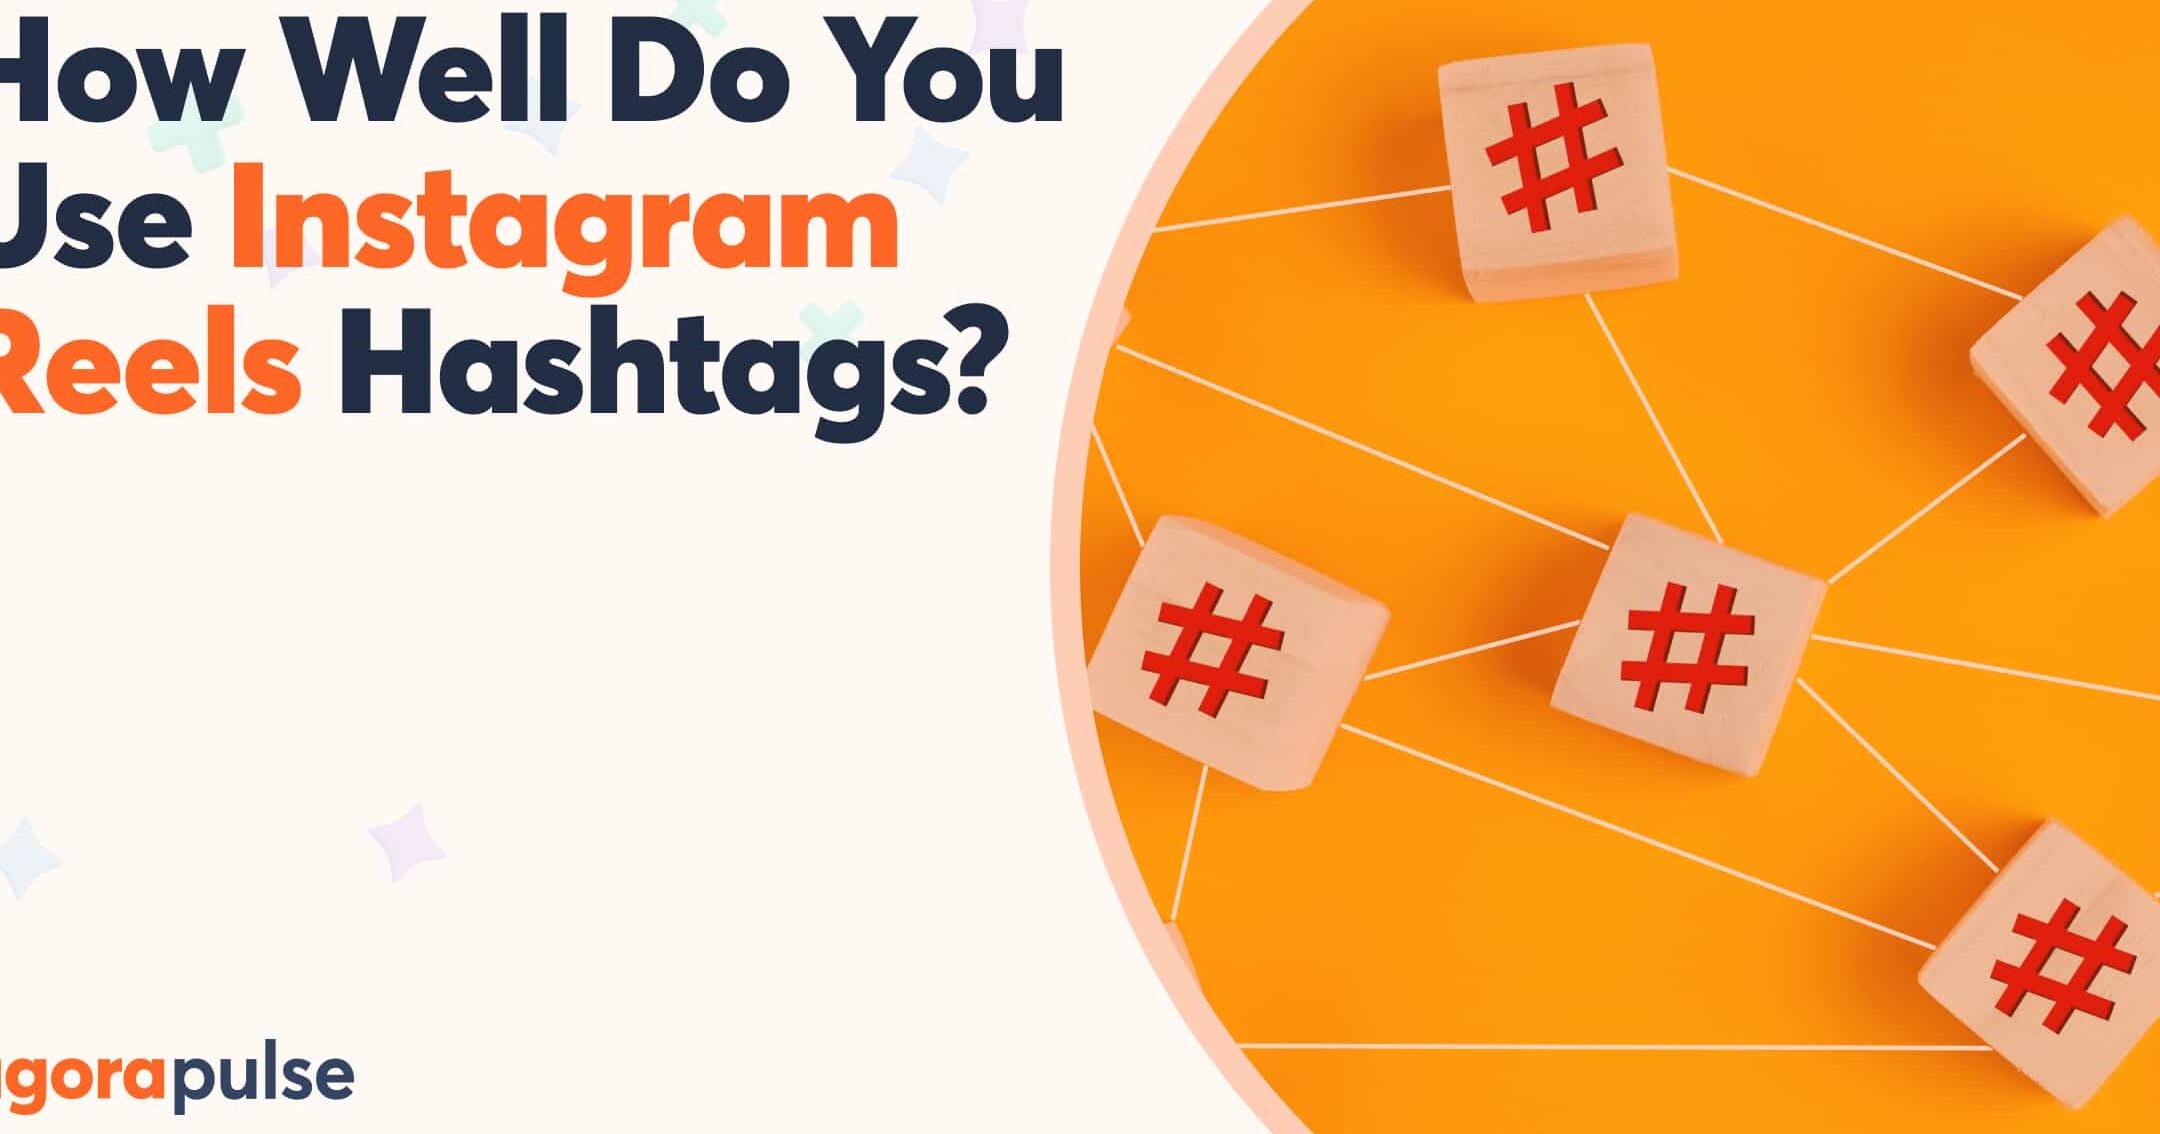 ¡Sea estratégico con los hashtags de Instagram Reels!